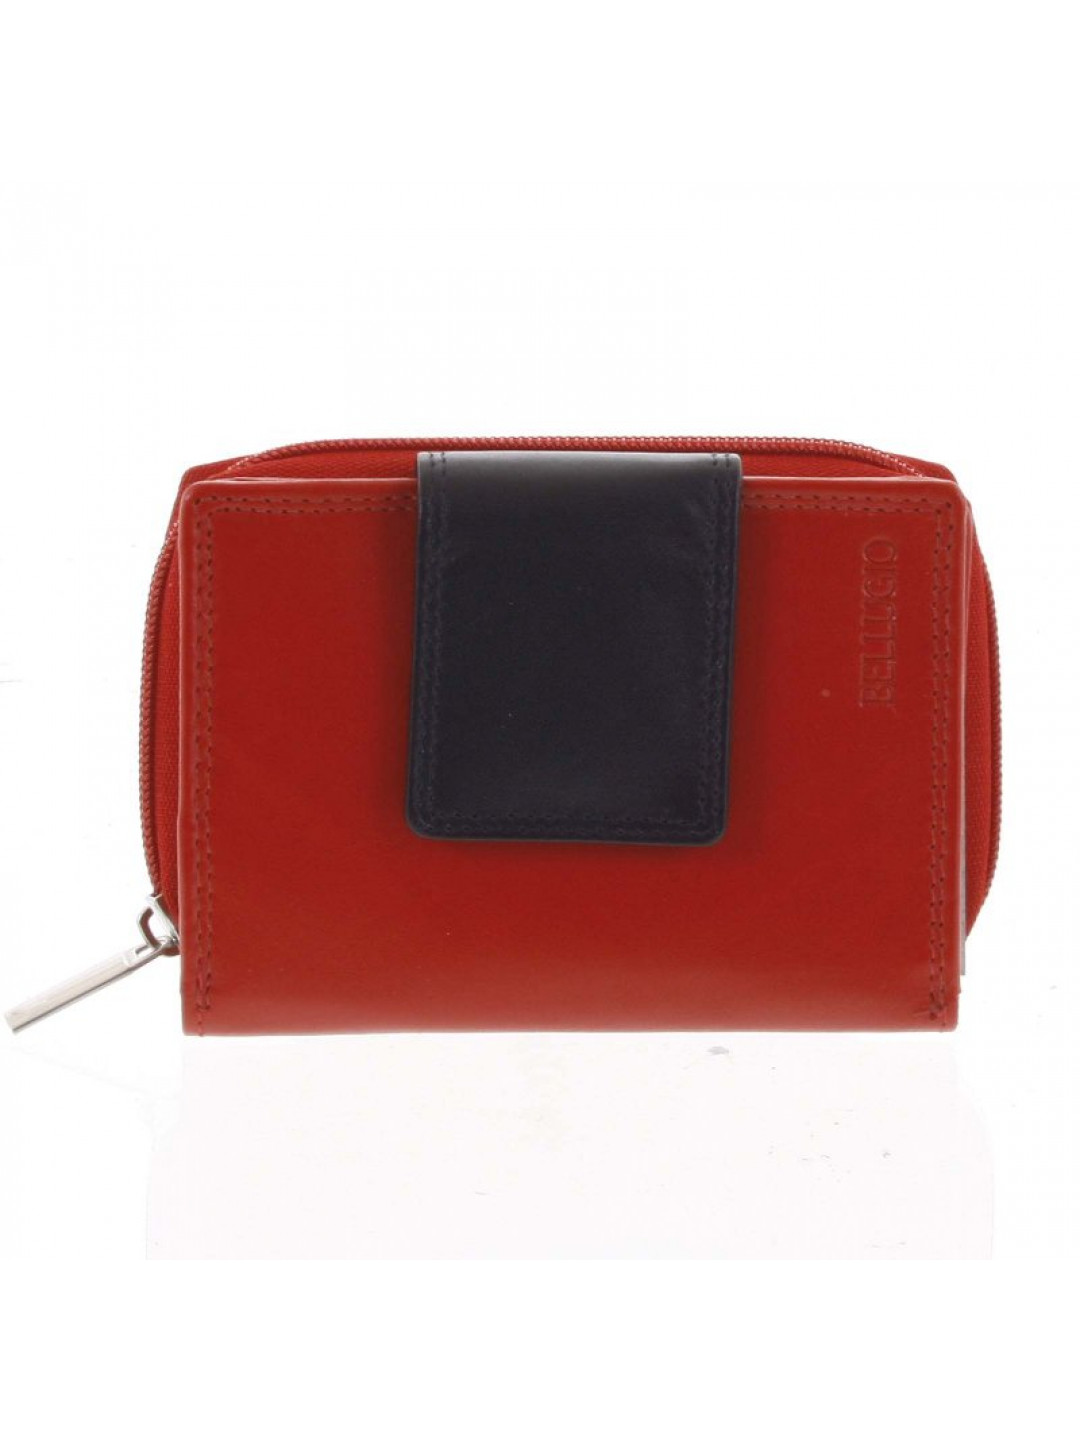 Dámská kožená peněženka červená – Bellugio Eliela New